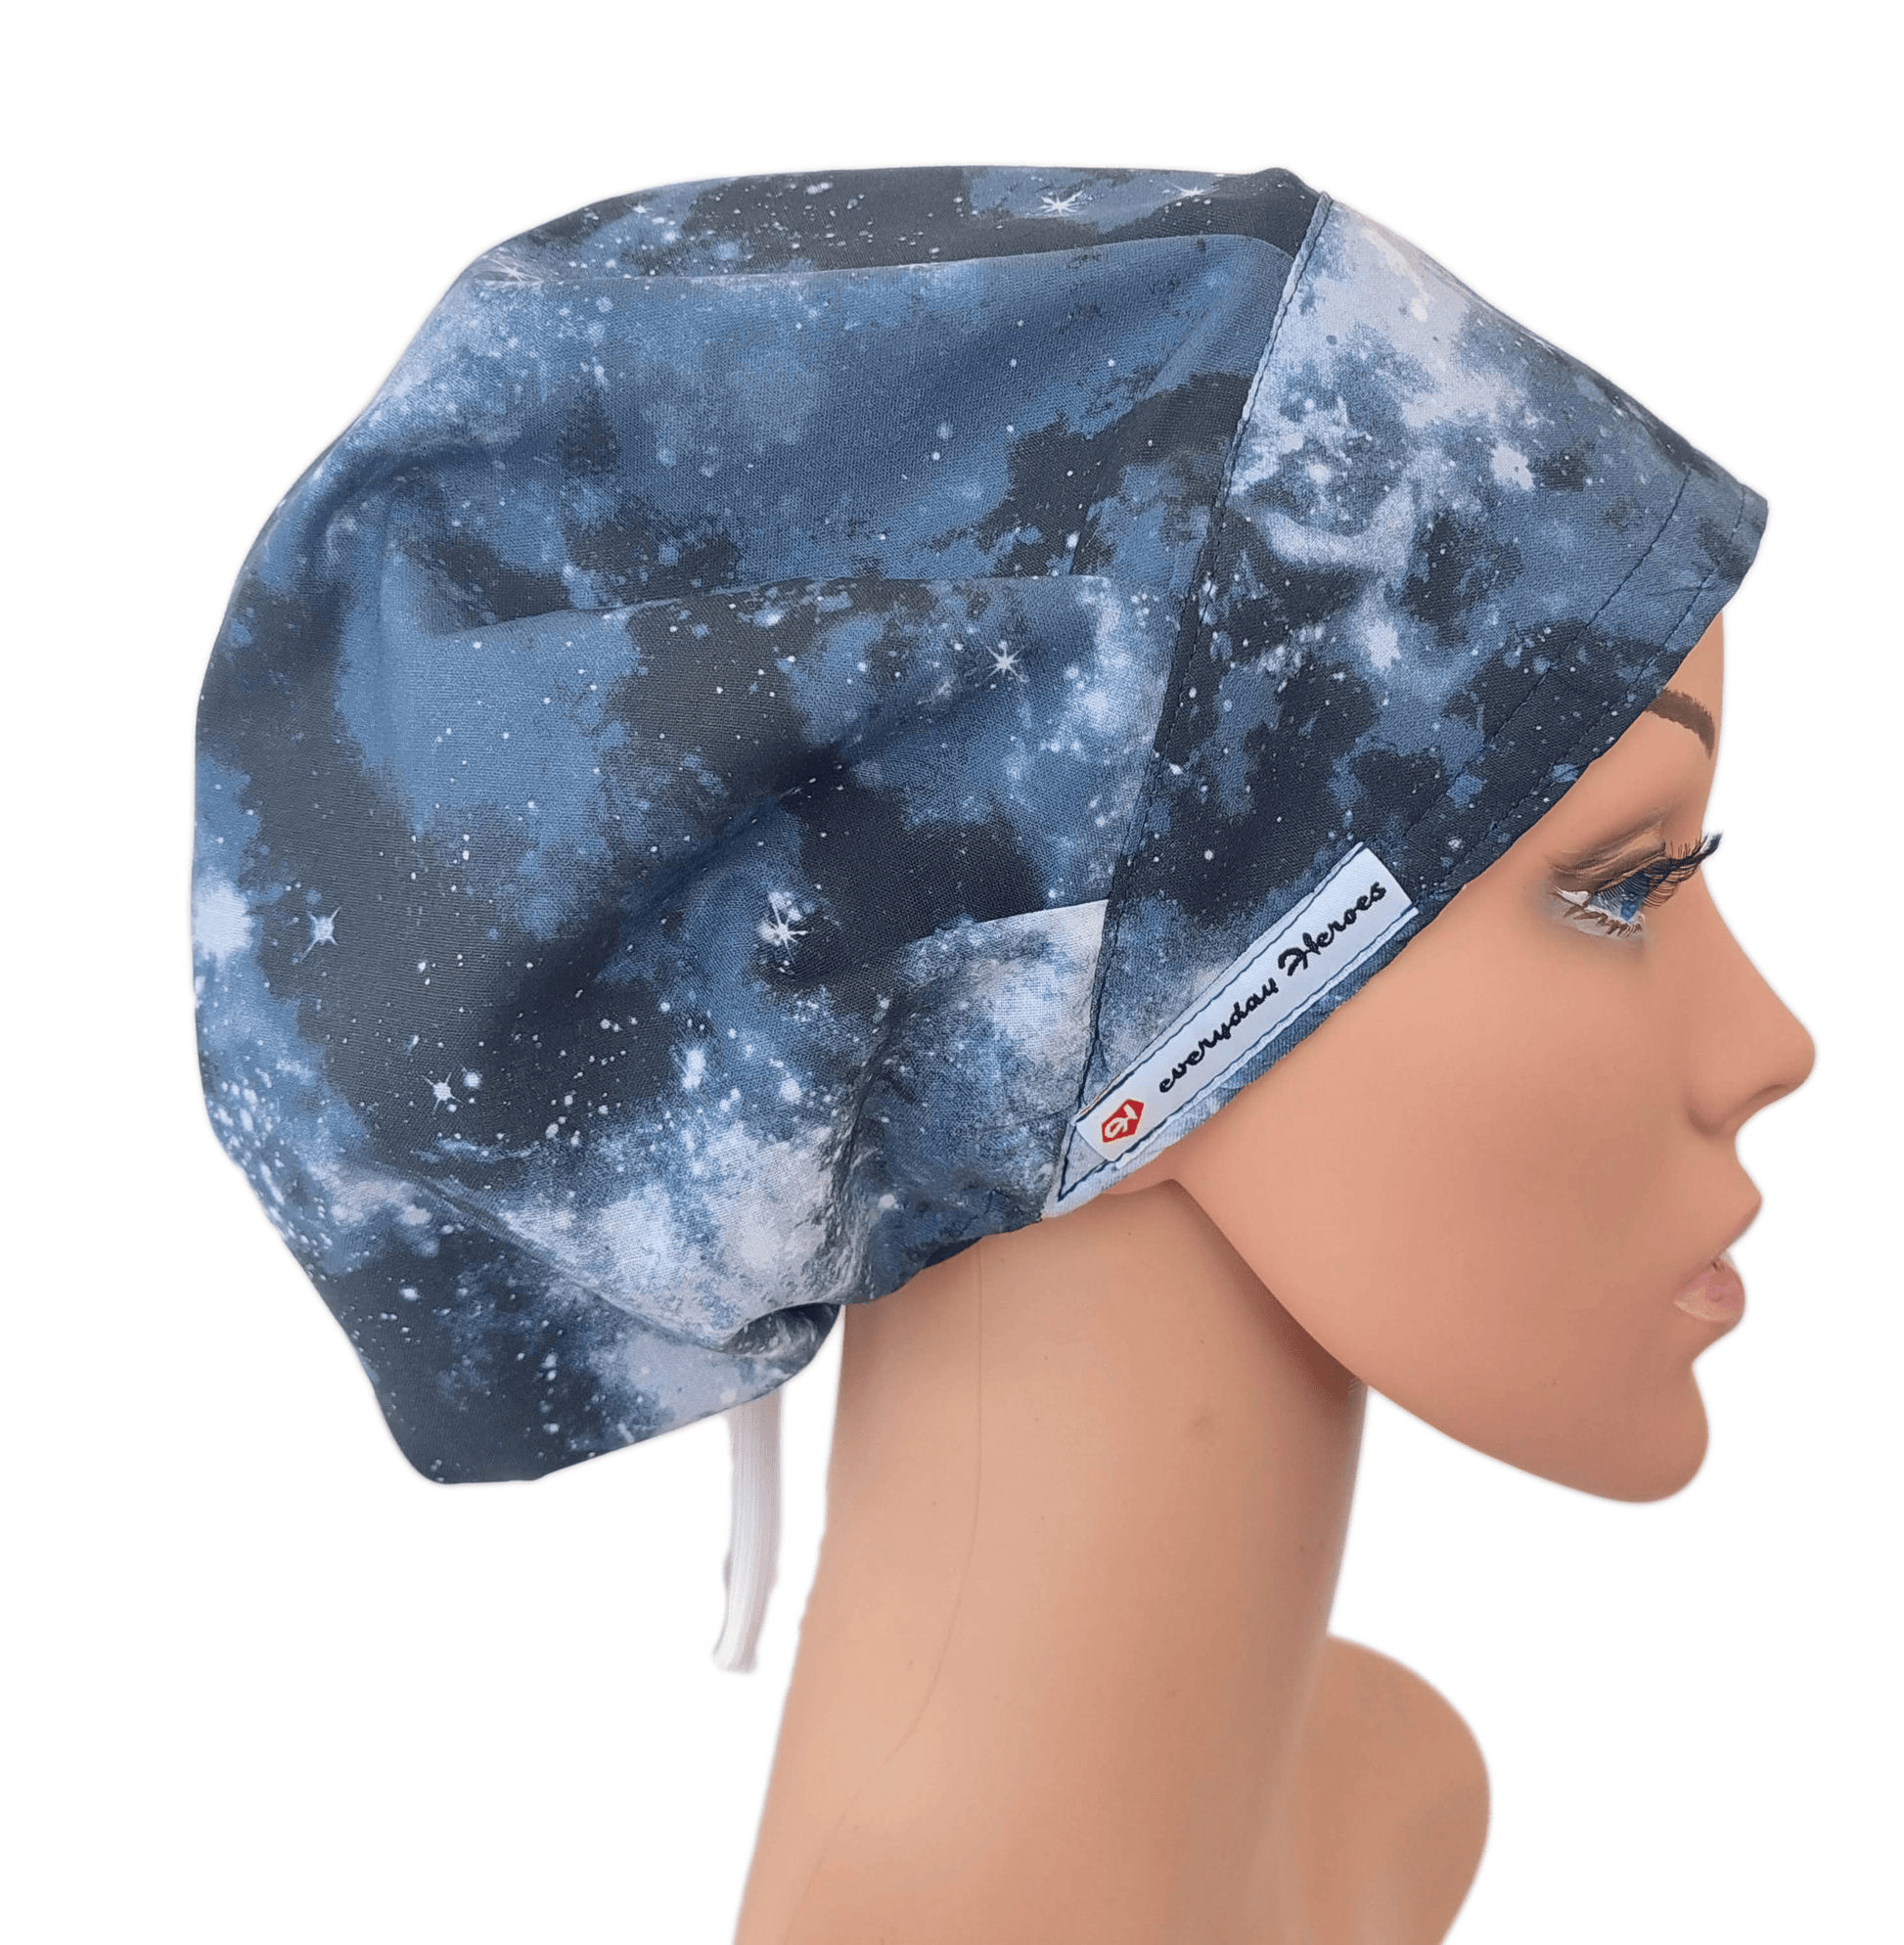 Scrub Caps Funny ,Scrub Hat Bouffant Stellar Constellation 